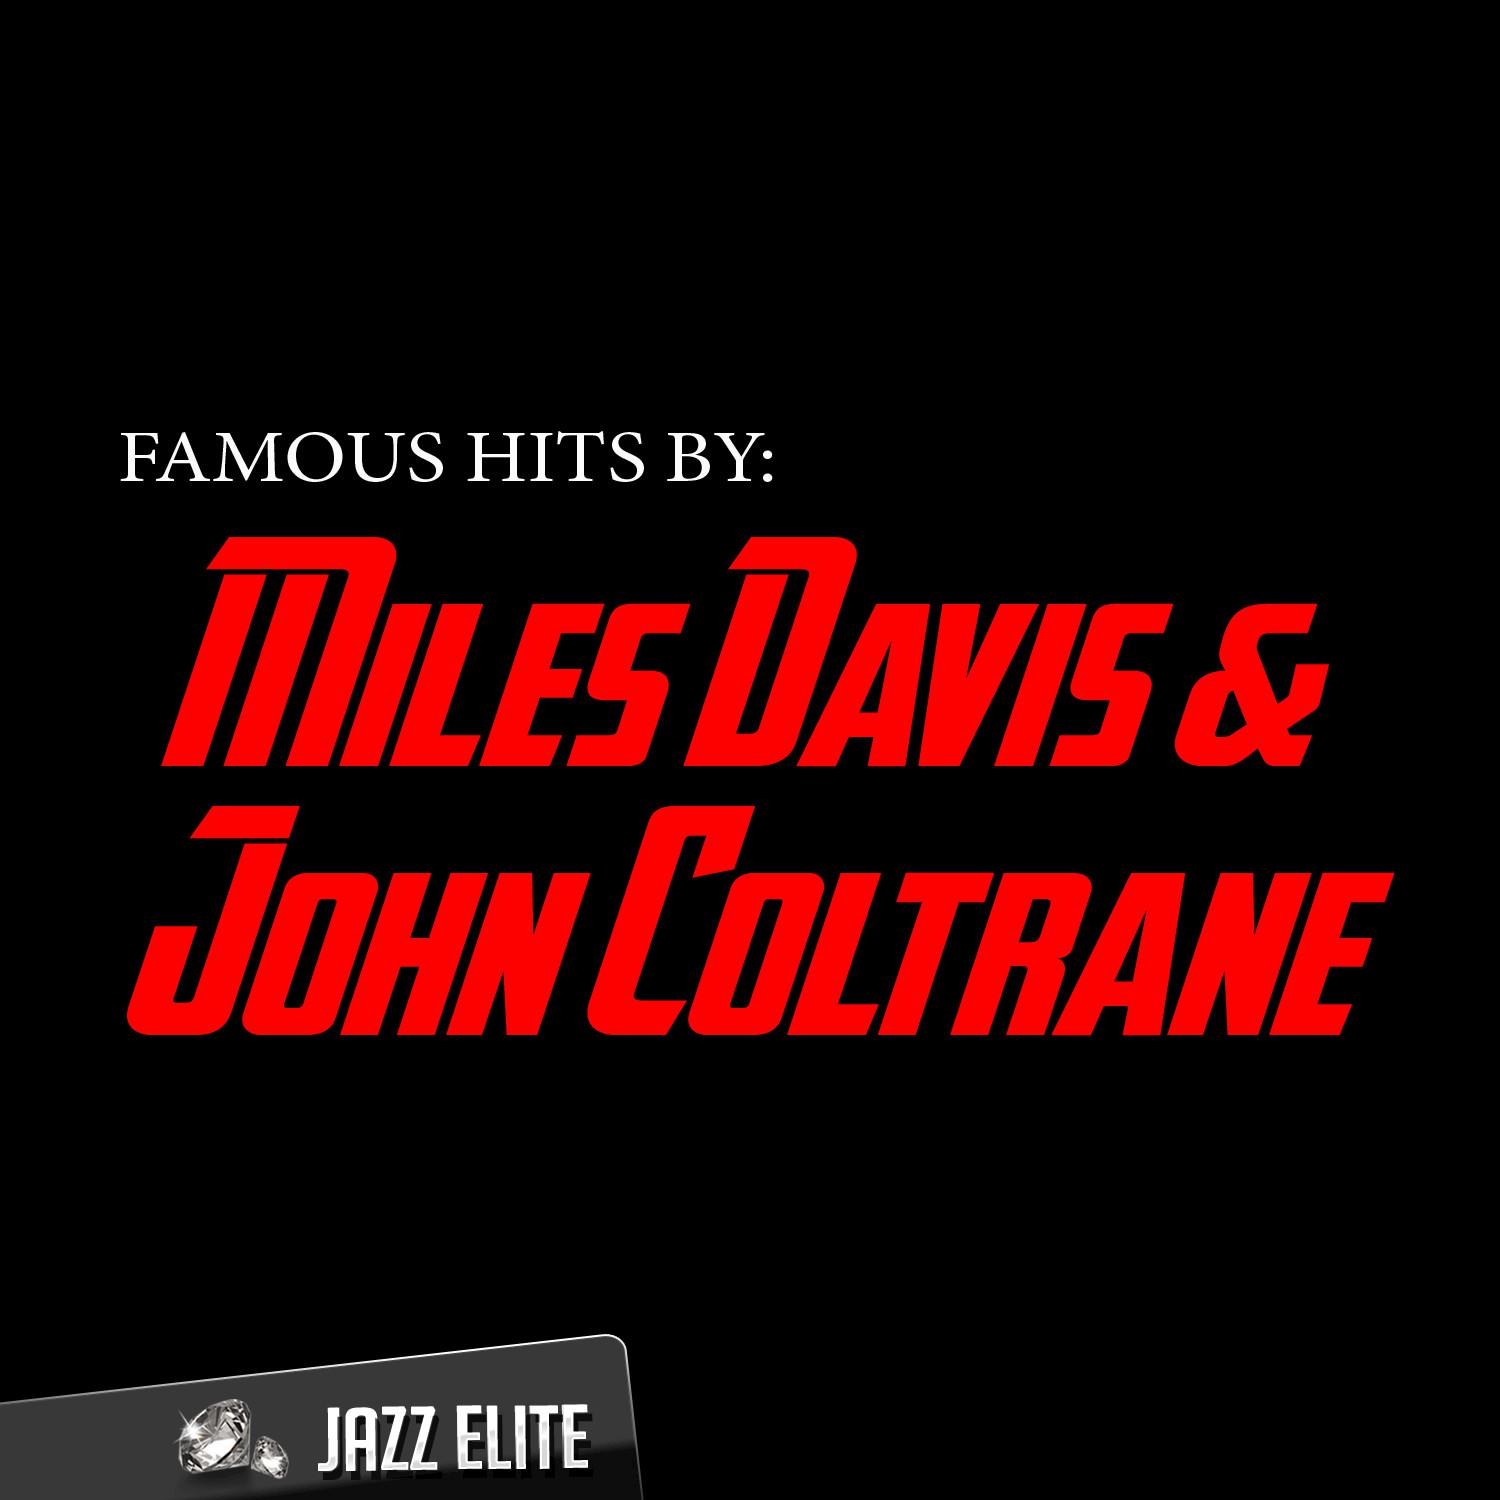 Famous Hits by Miles Davis & John Coltrane